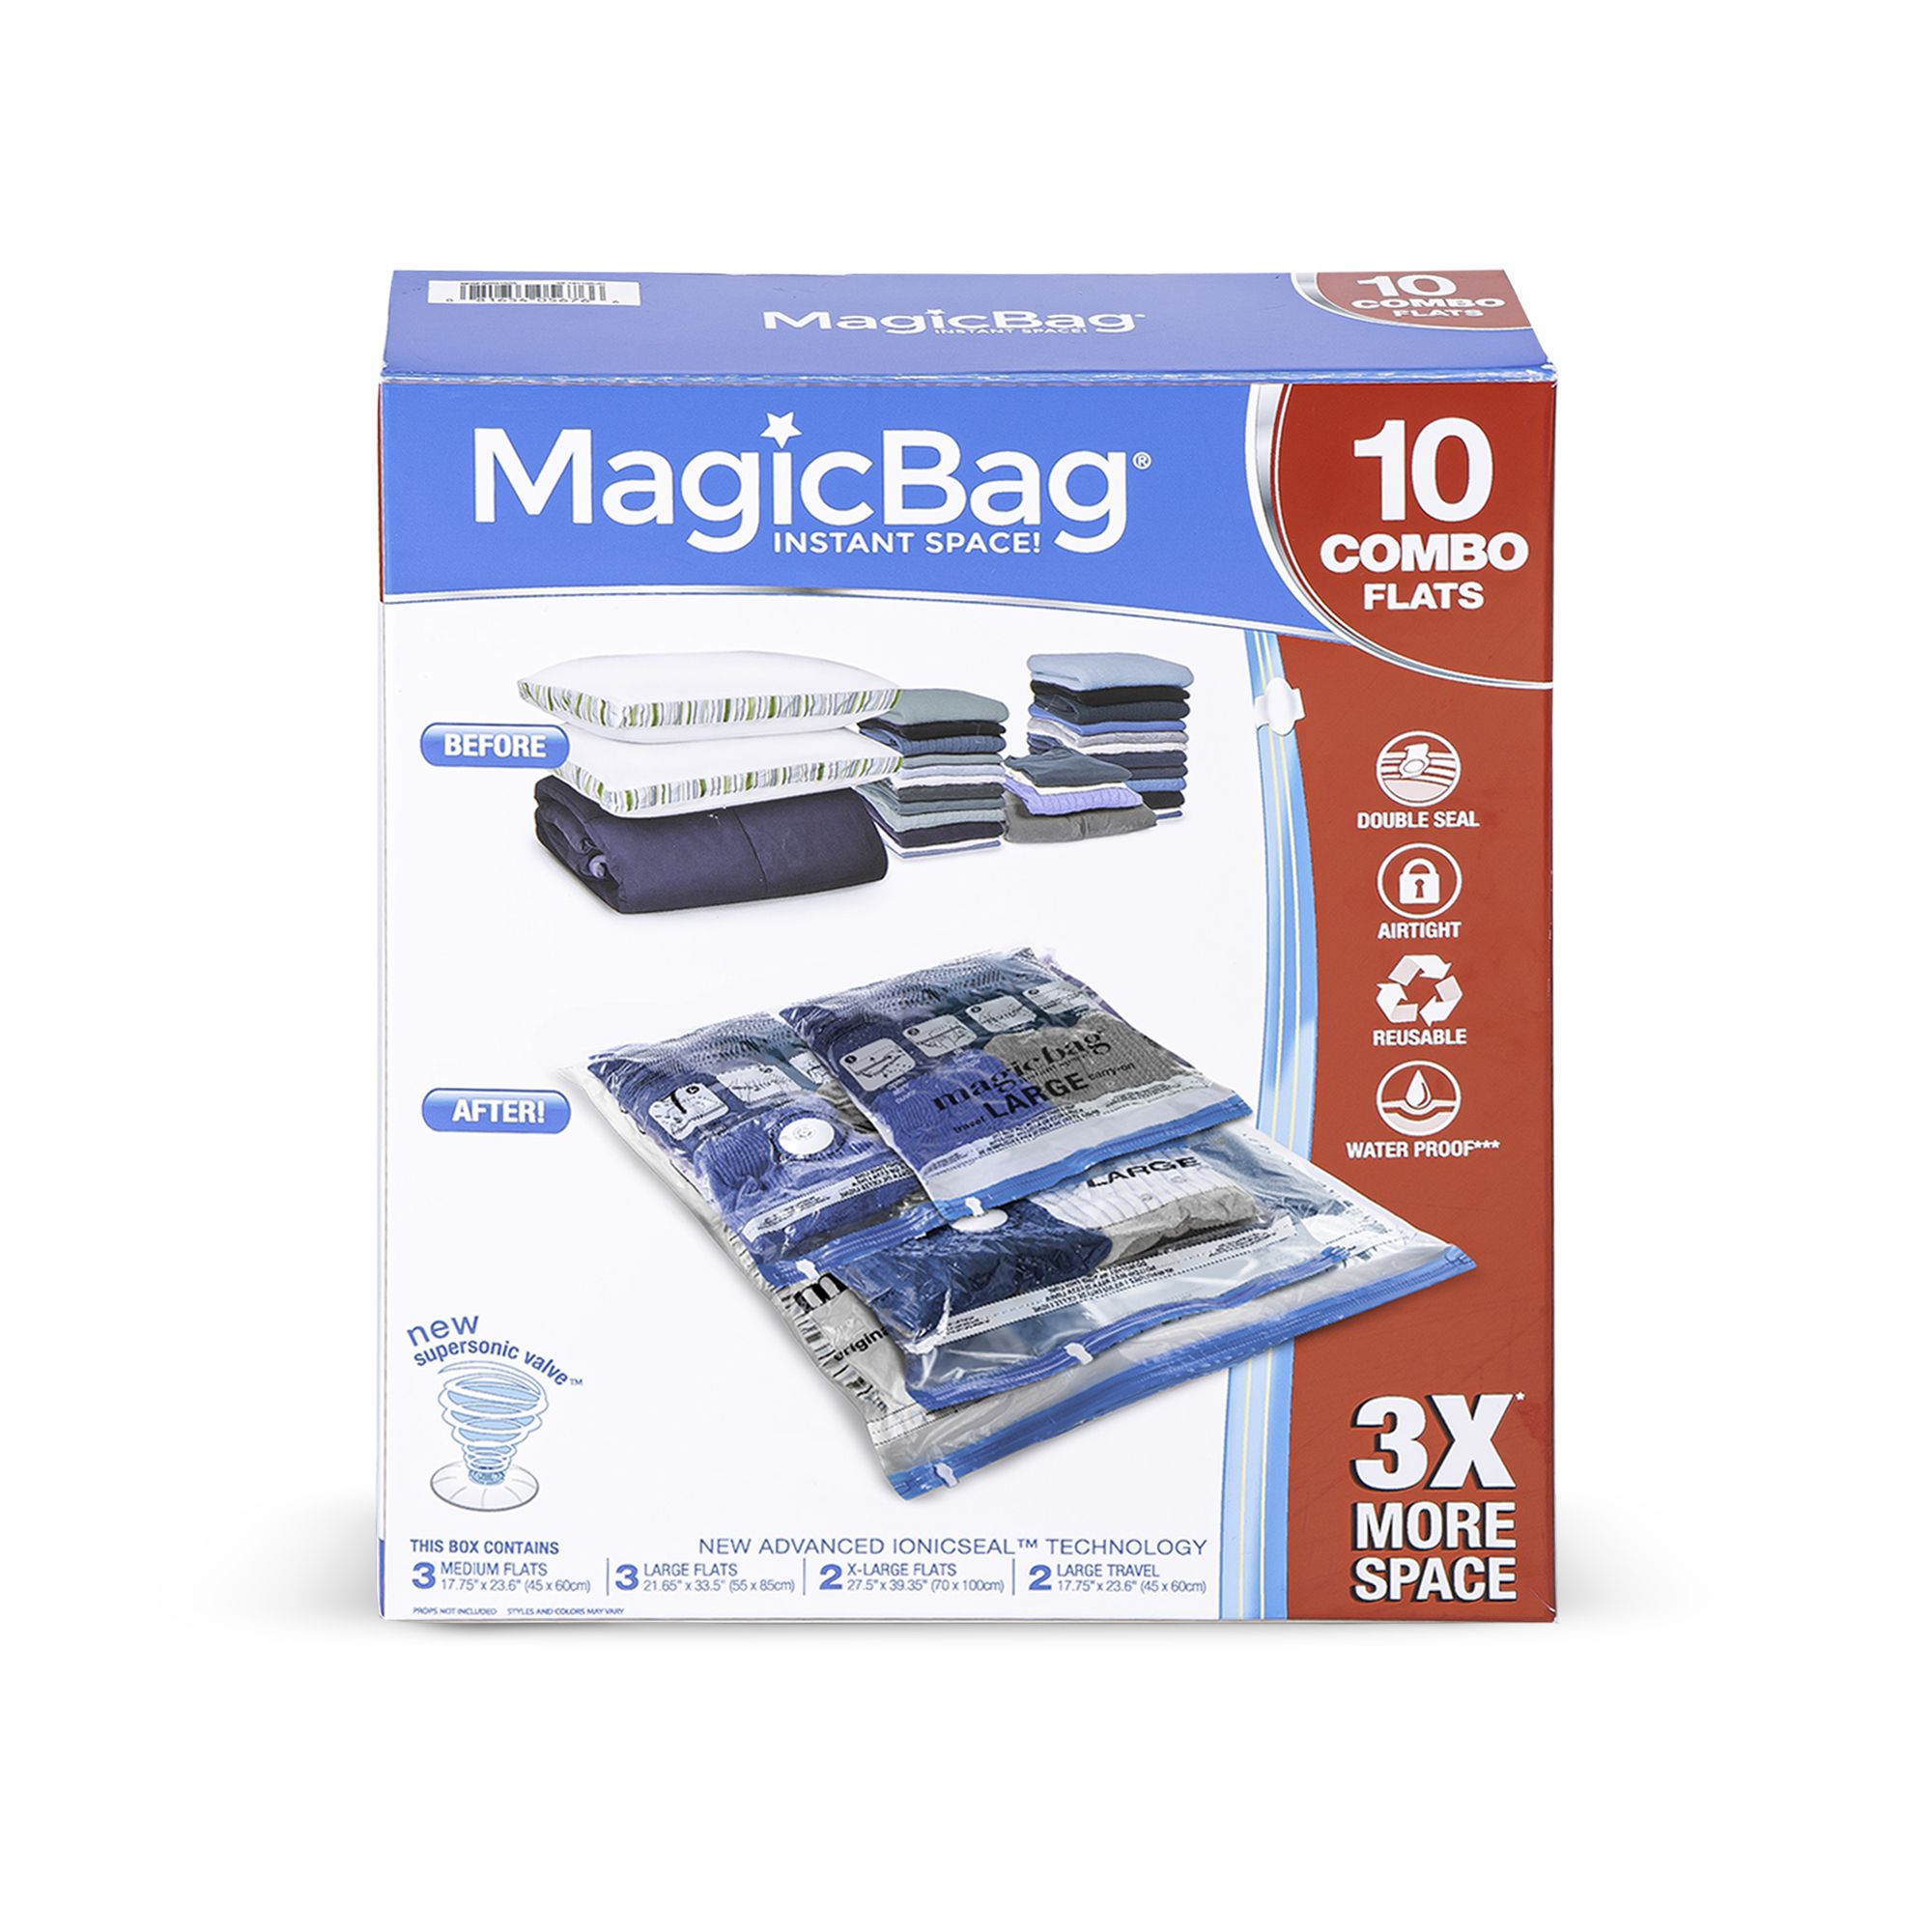 Black & Decker Vacuum Storage Bags (Pack of 3) Clear M